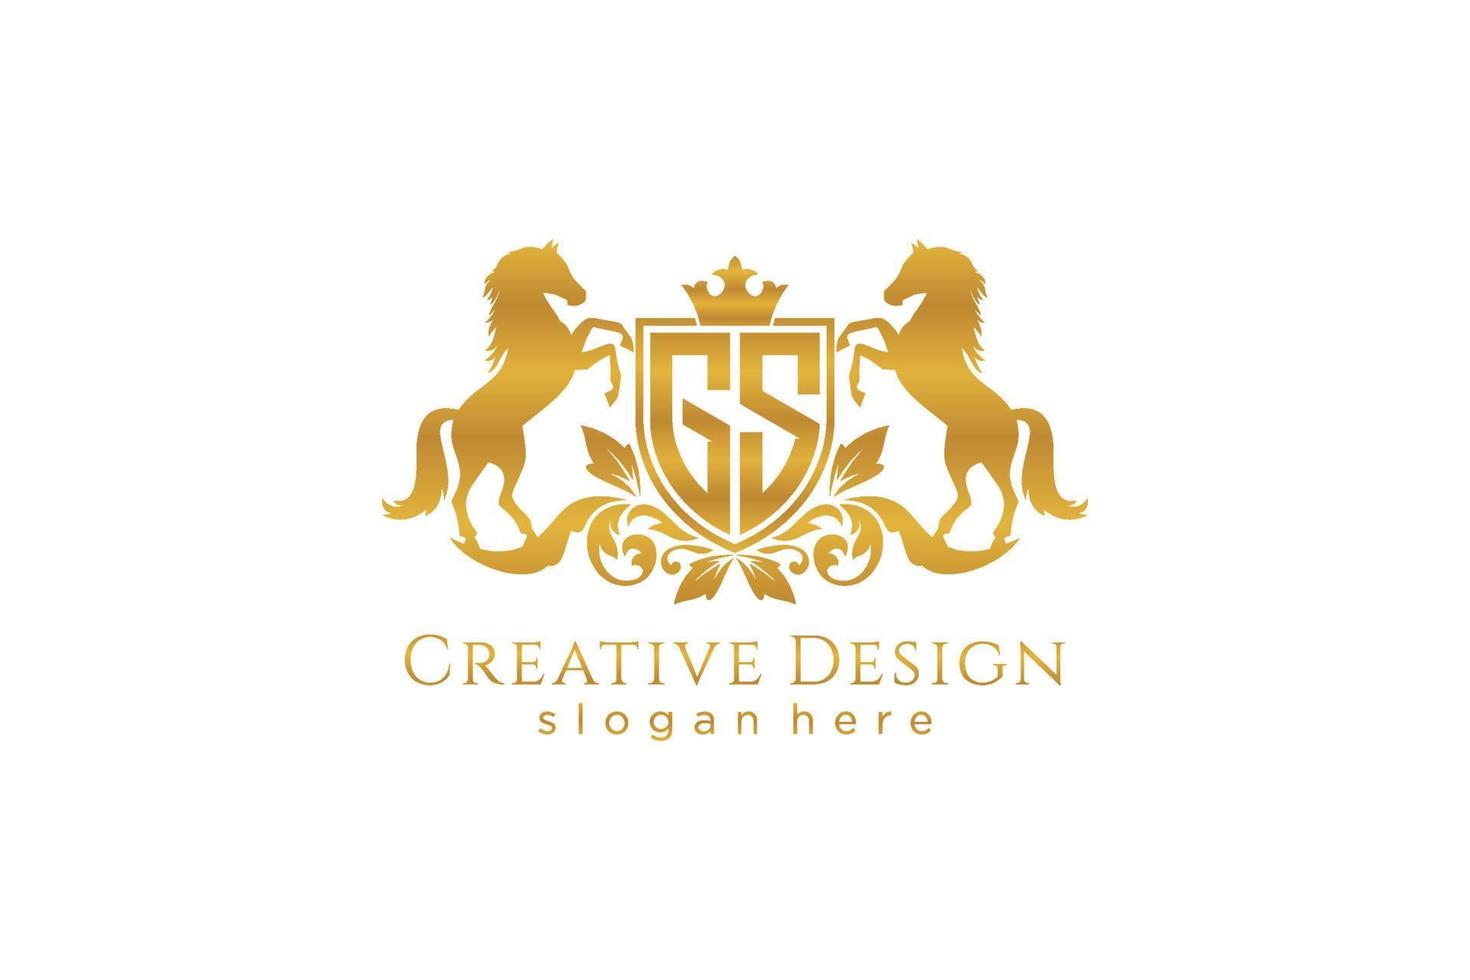 crista dourada retro gs inicial com escudo e dois cavalos, modelo de crachá com pergaminhos e coroa real - perfeito para projetos de marca luxuosos vetor